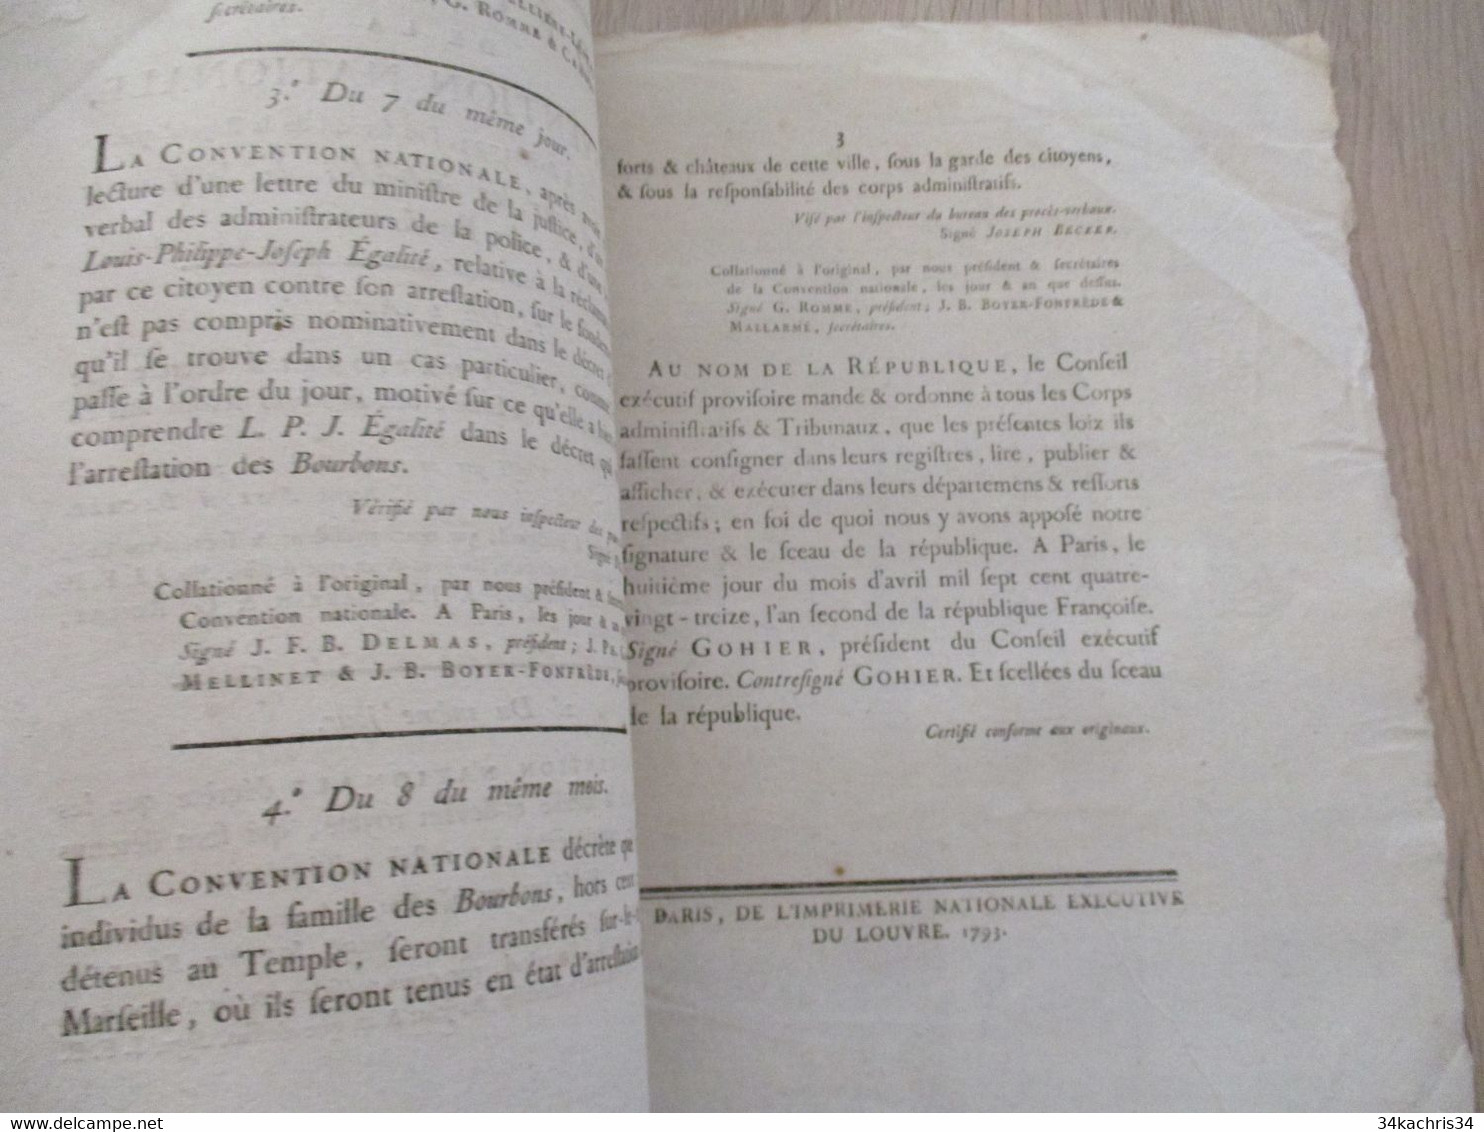 Décret De La Convention Nationale 1793 Révolution Relatifs à Tous Les Individus De La Famille Des Bourbons - Décrets & Lois